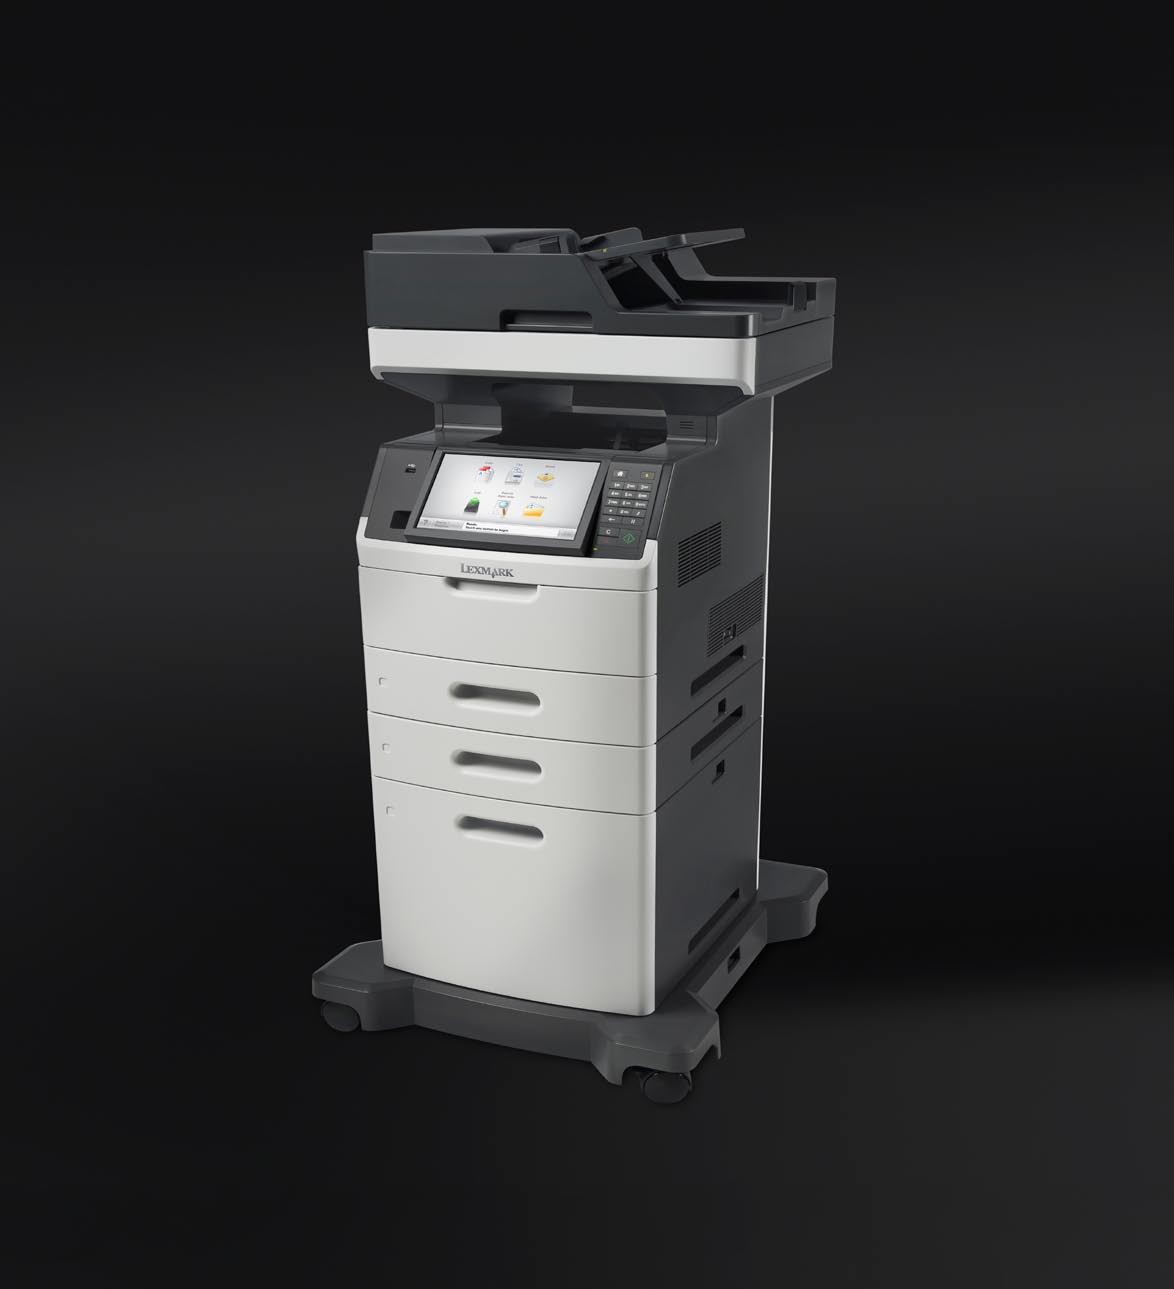 Seria Lexmark XM5100 Monochromatyczne laserowe drukarki wielofunkcyjne Przedstawiony model zawiera dodatkowe wyposażenie opcjonalne Wszechstronność i